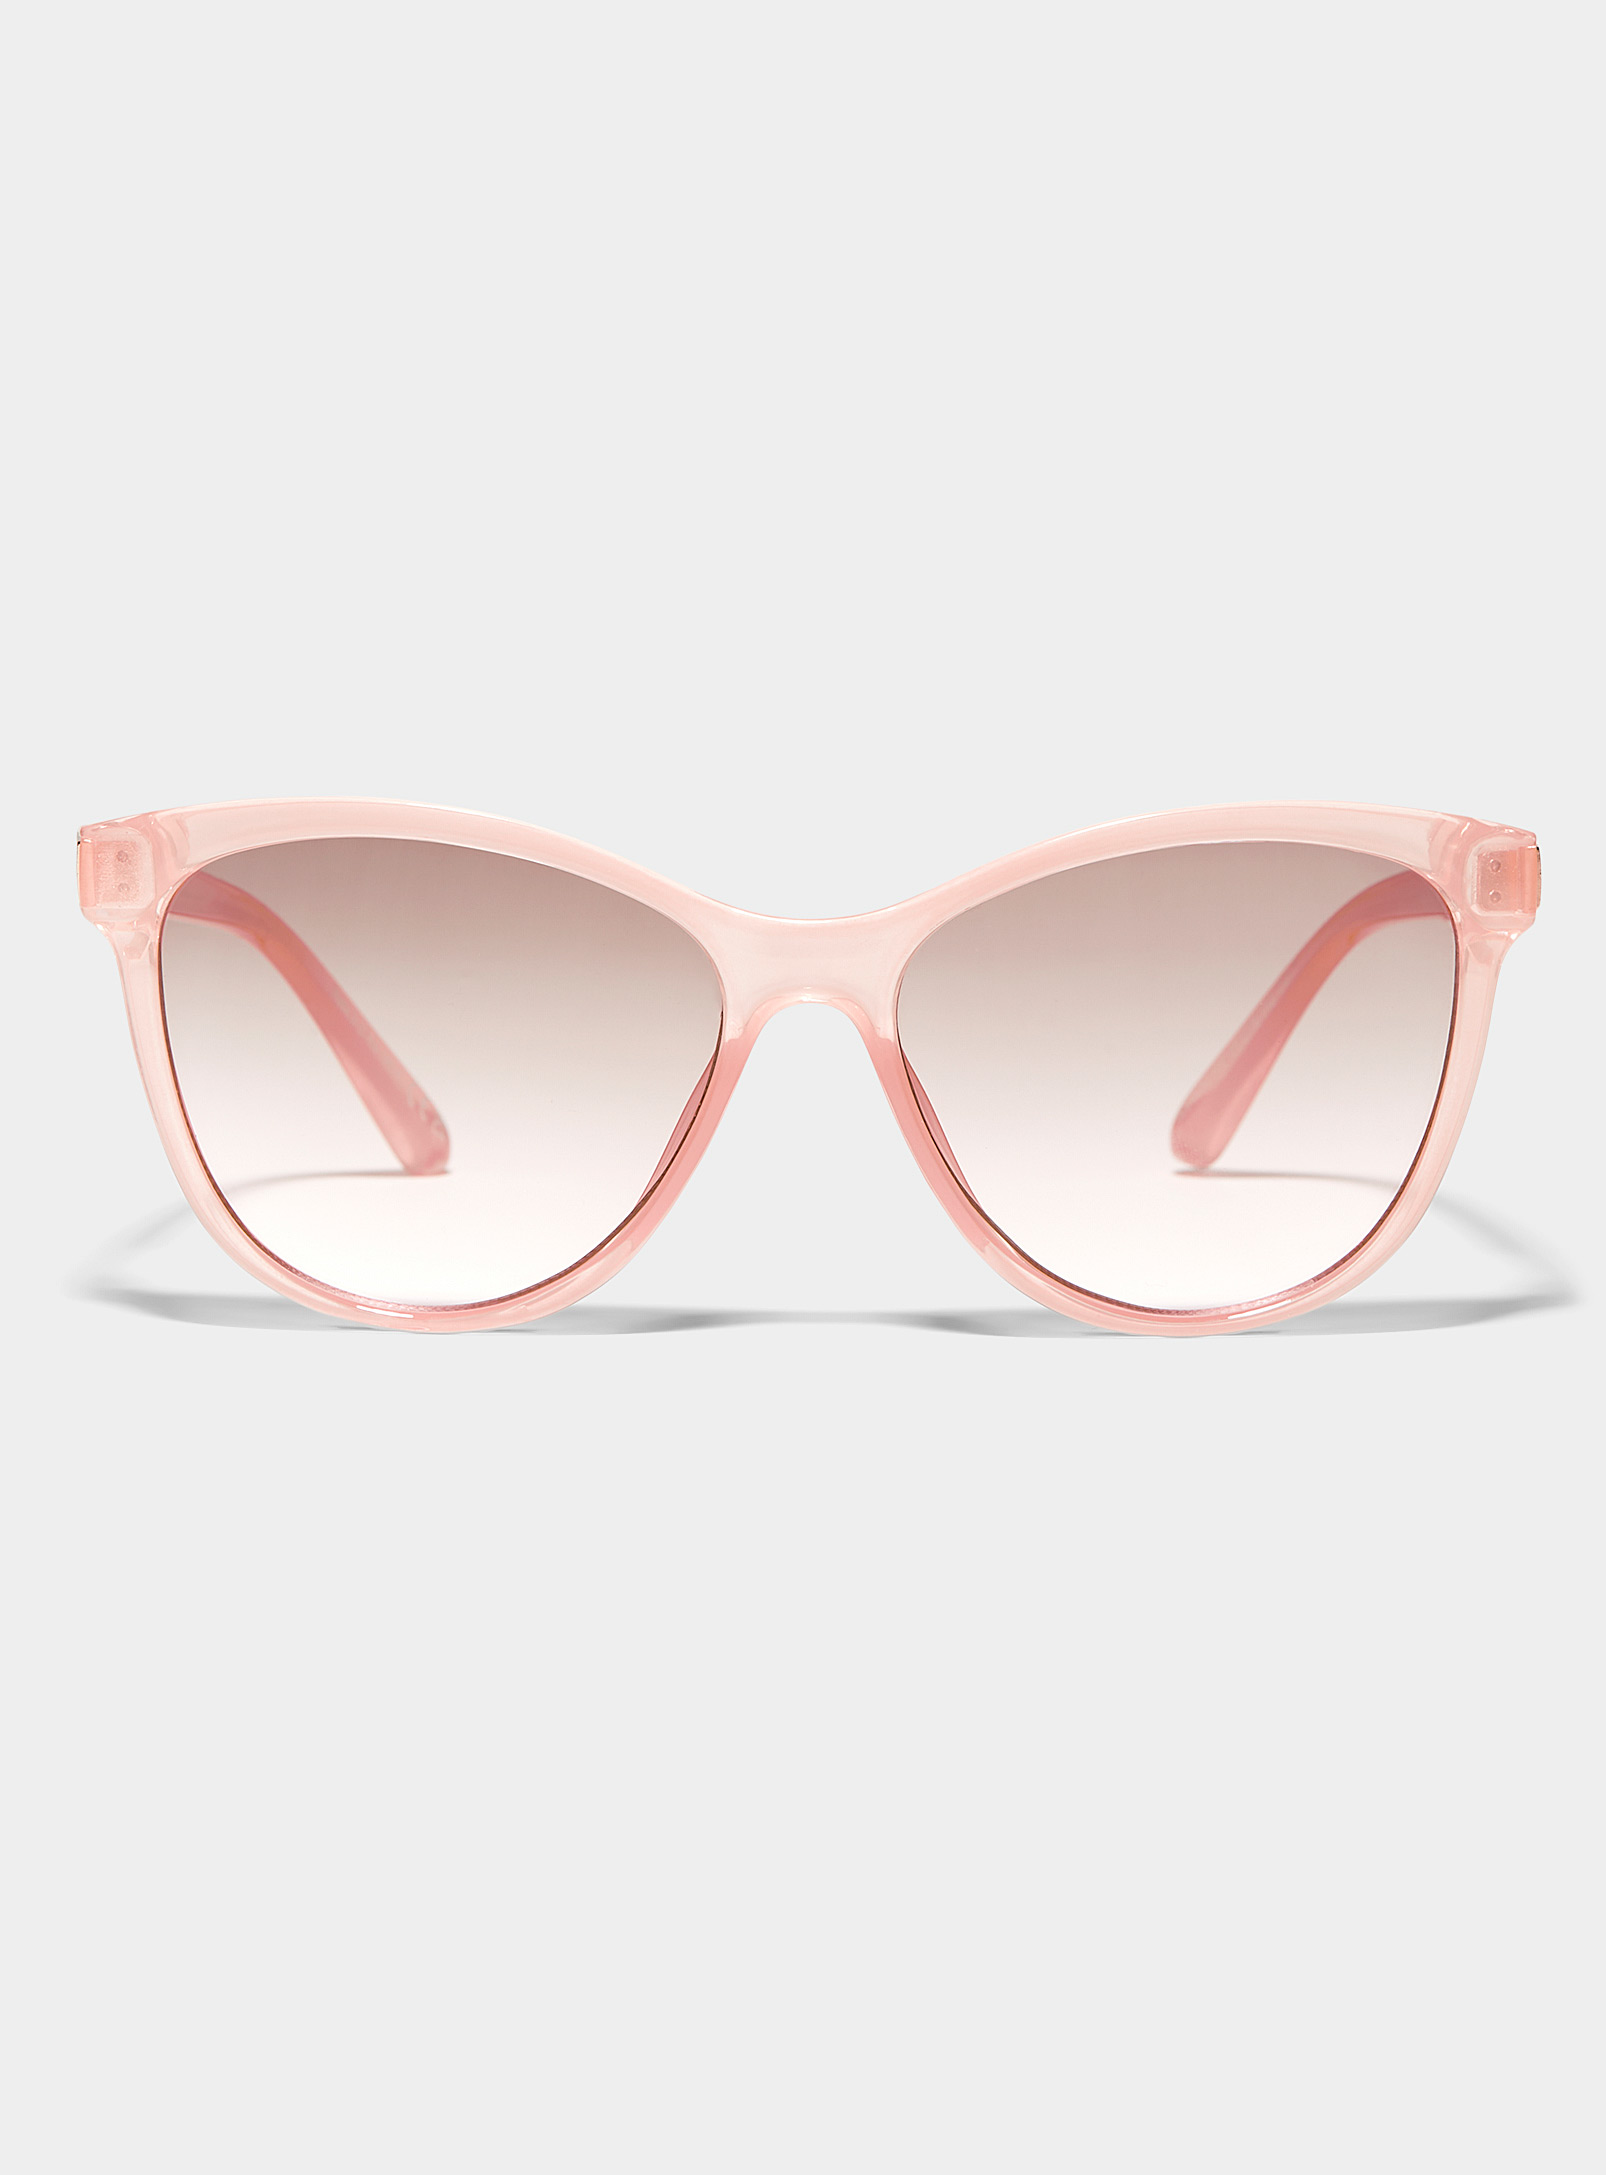 Simons - Women's Beachside cat-eye sunglasses